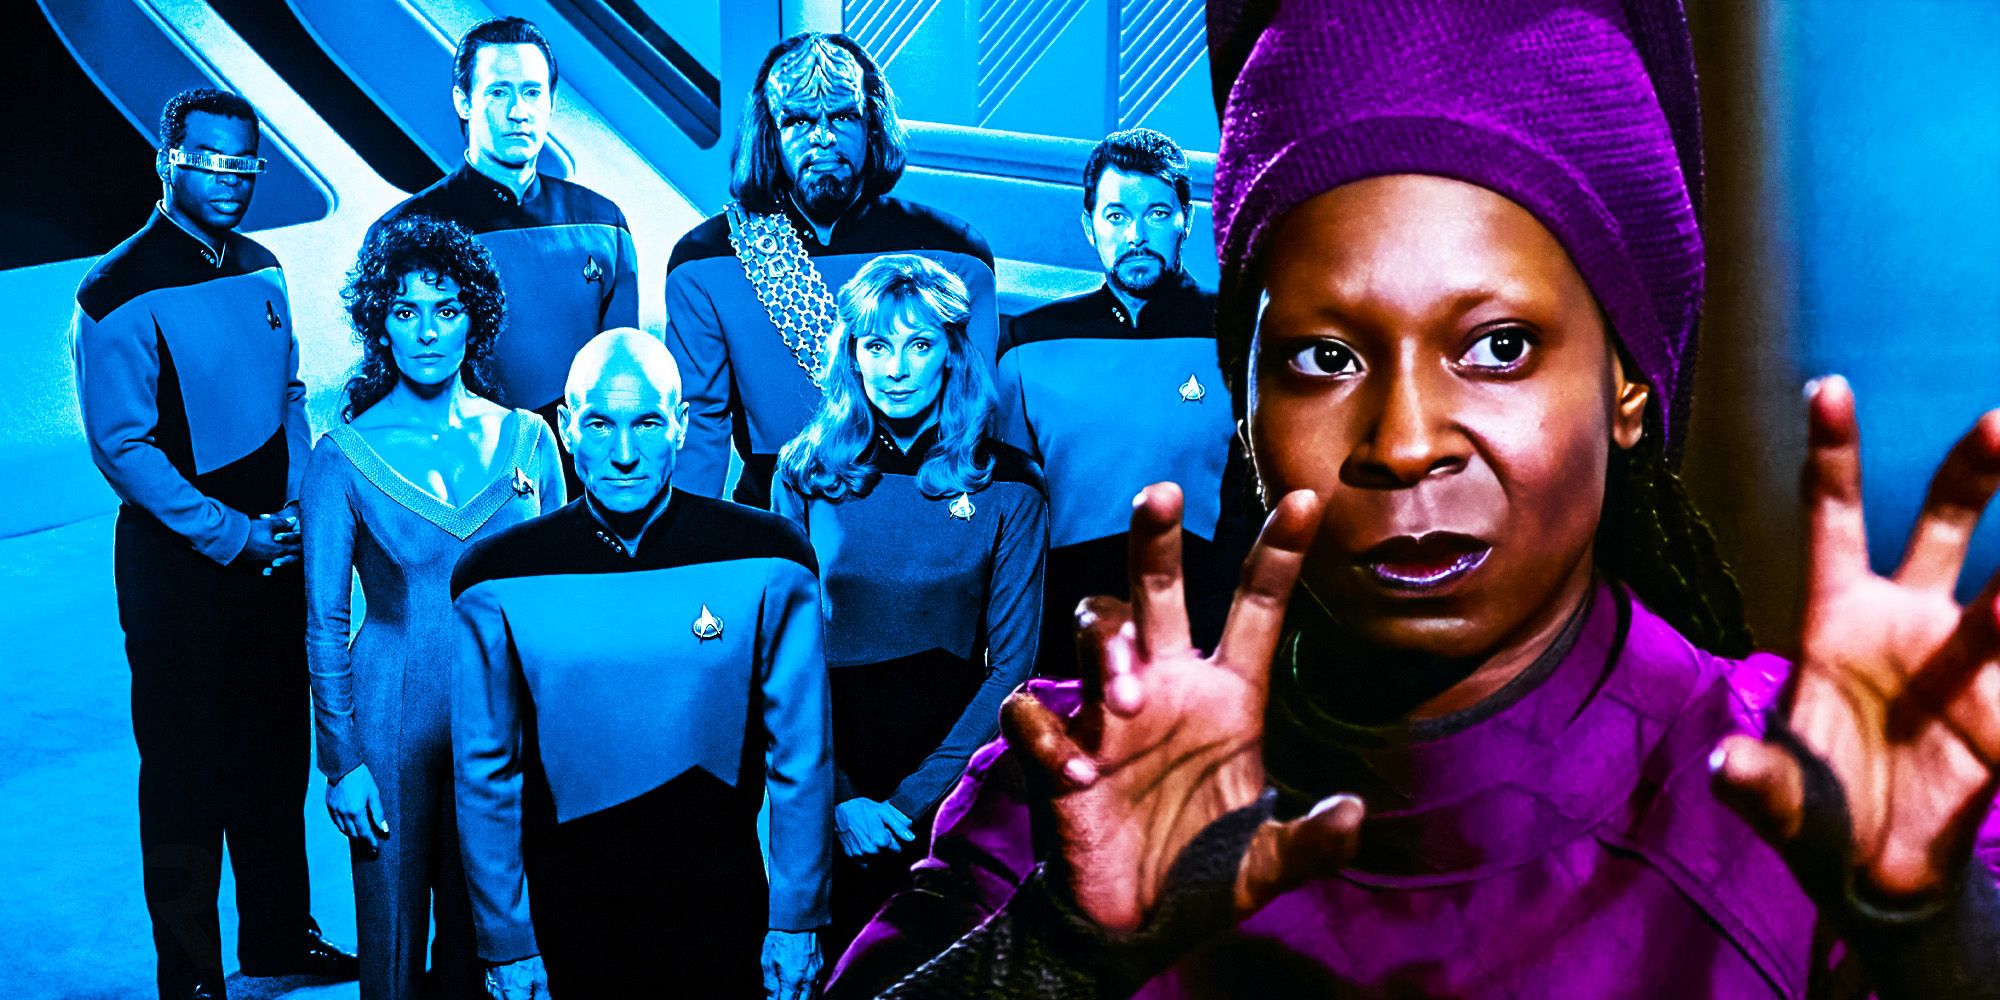 Star Trek: TNG “se volvió legítimo cuando Whoopi Golberg” se unió, dice Brent Spiner